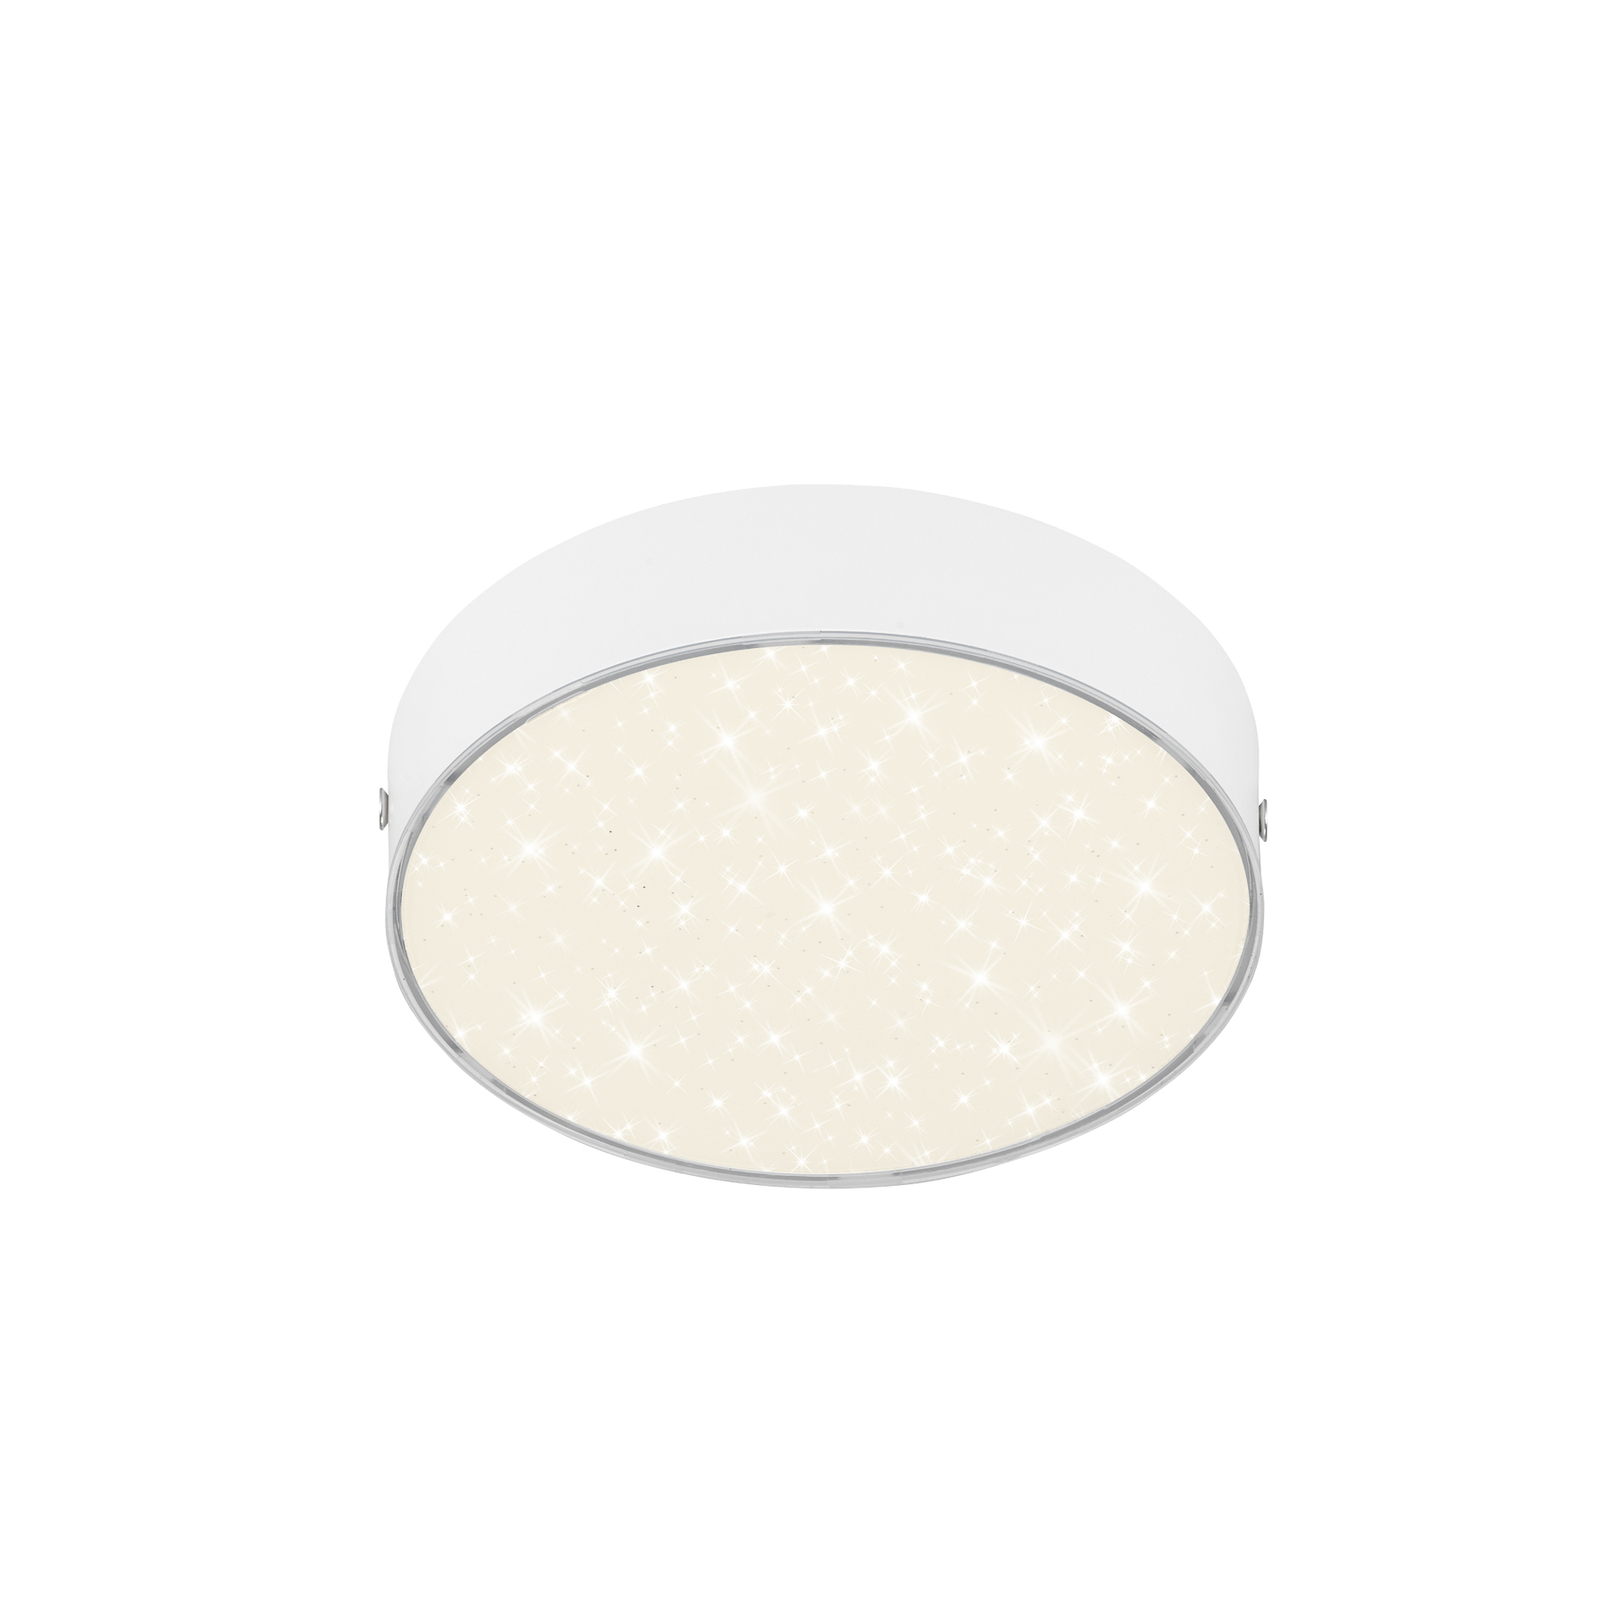 Flame Star LED ceiling light, Ø 15.7 cm, white